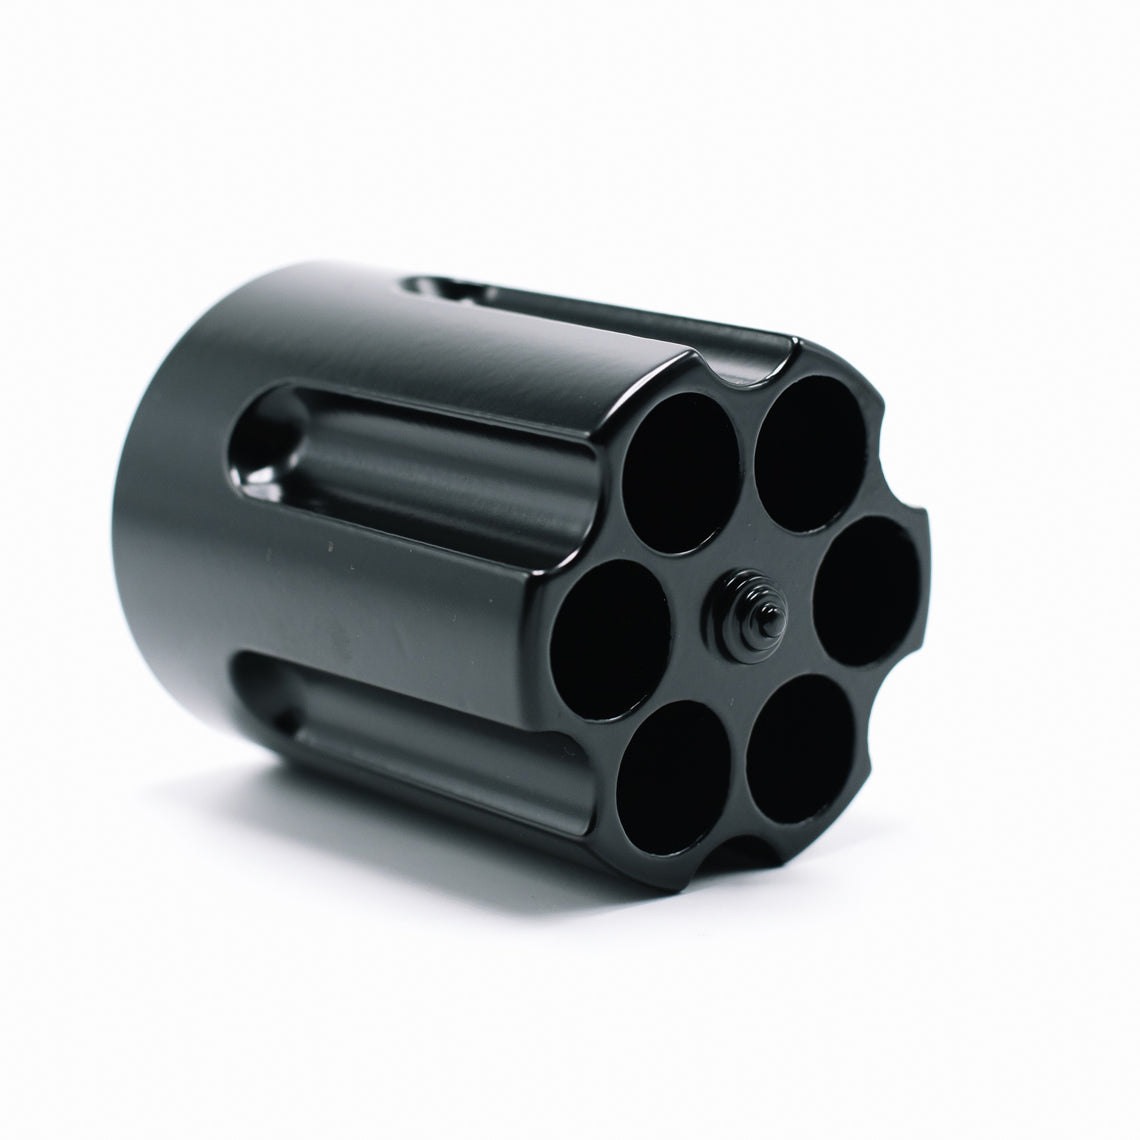 Revolver Cylinder Pen Holder - Black